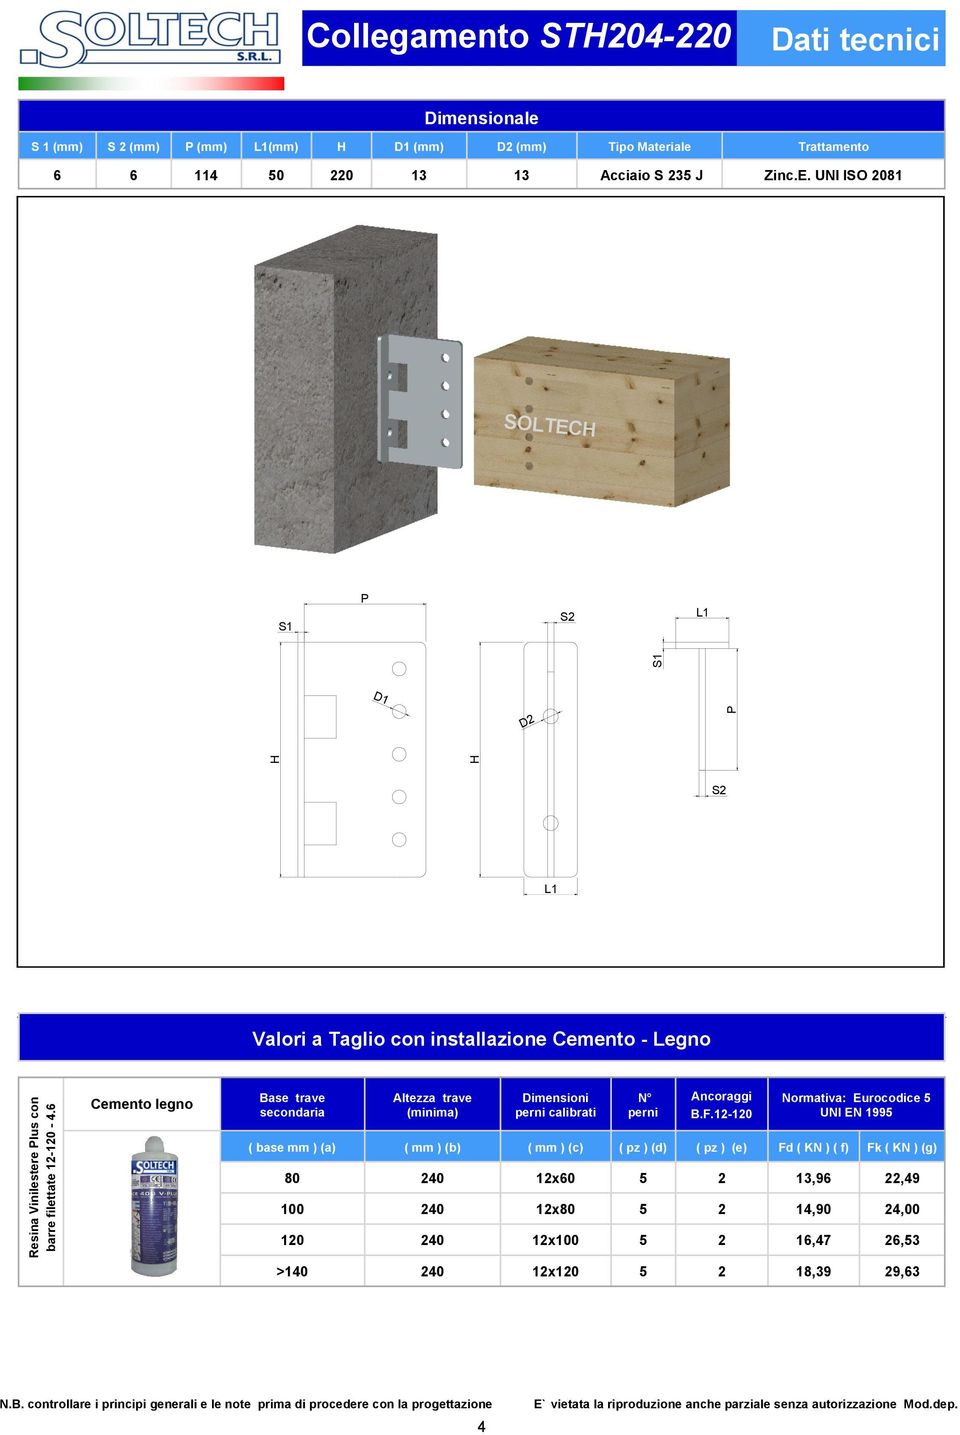 UNI ISO 2081 D1 D2 Cemento legno Base trave secondaria Altezza trave (minima) Dimensioni perni calibrati N perni Ancoraggi B.F.